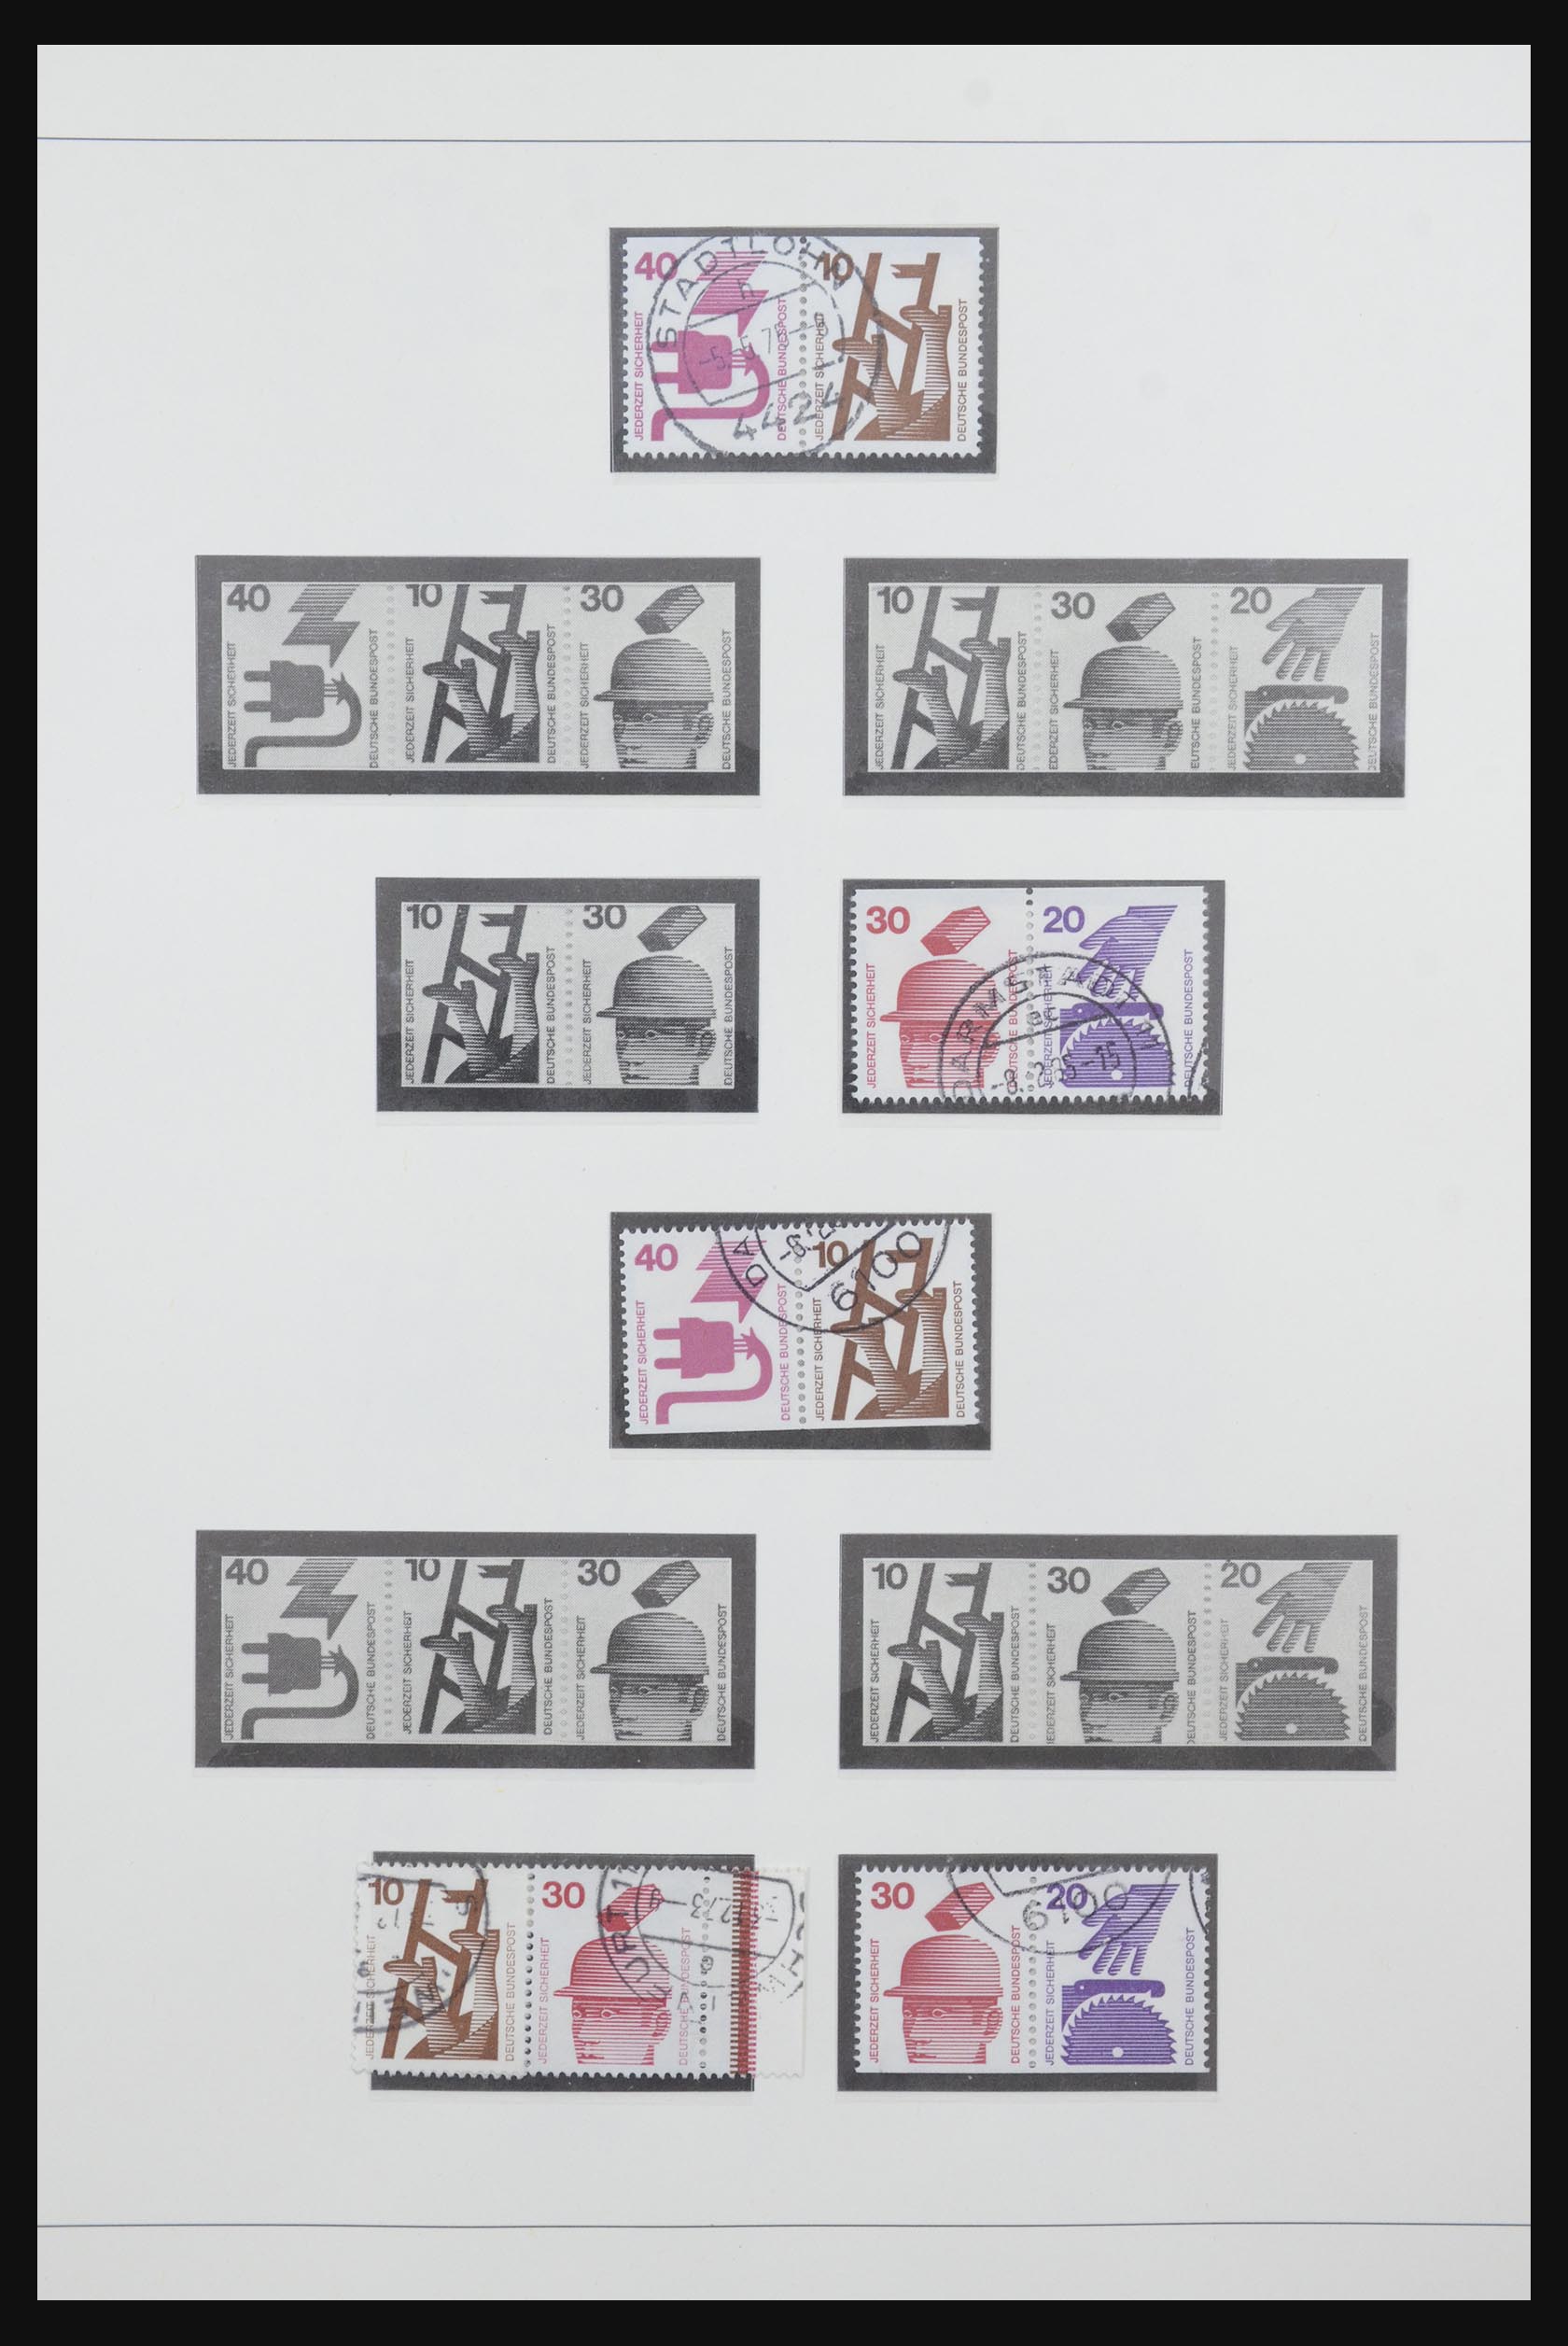 31842 052 - 31842 Bundespost combinaties 1951-2003.